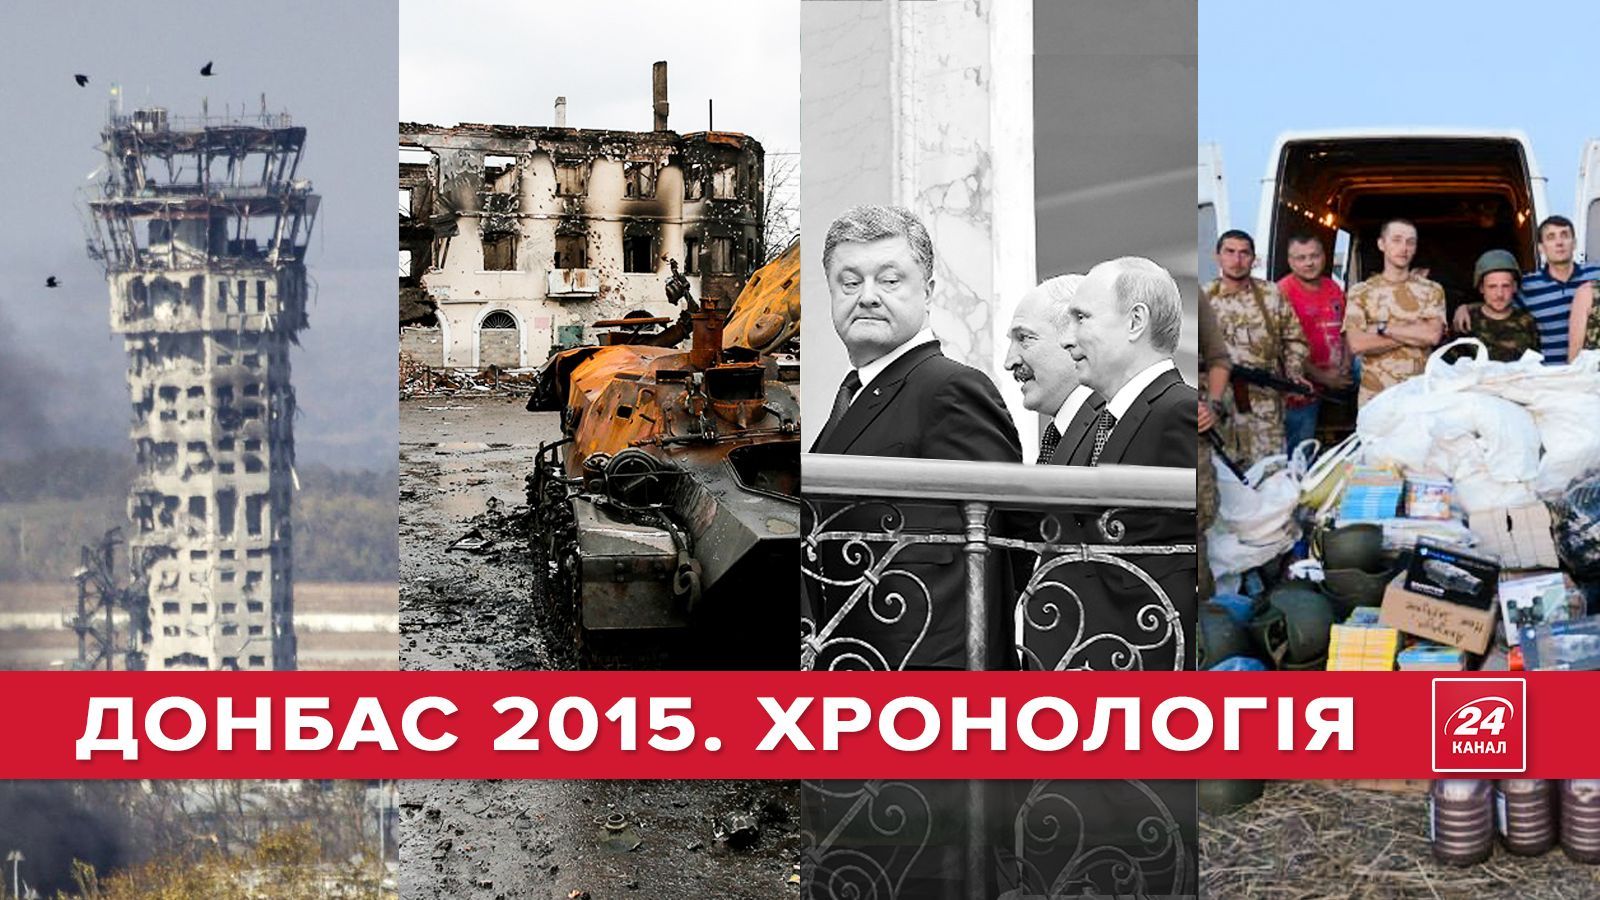 Війна 2015: хронологія подій на Донбасі (18+)